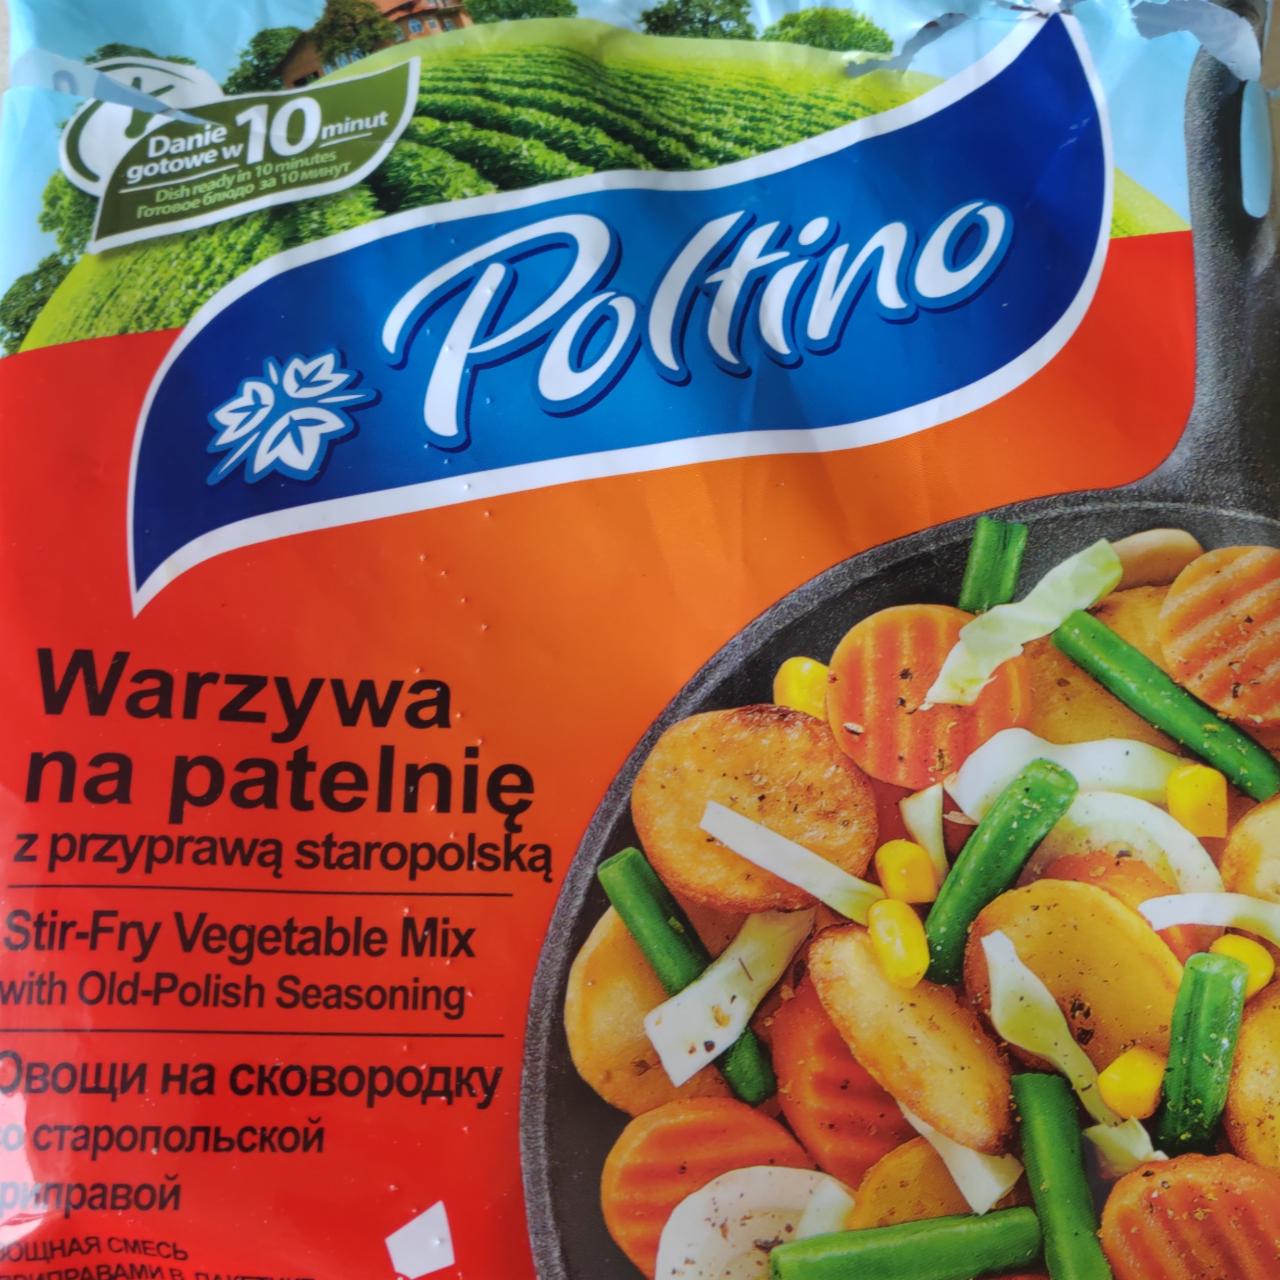 Фото - овощная смесь замороженная для жарки со специями Poltino